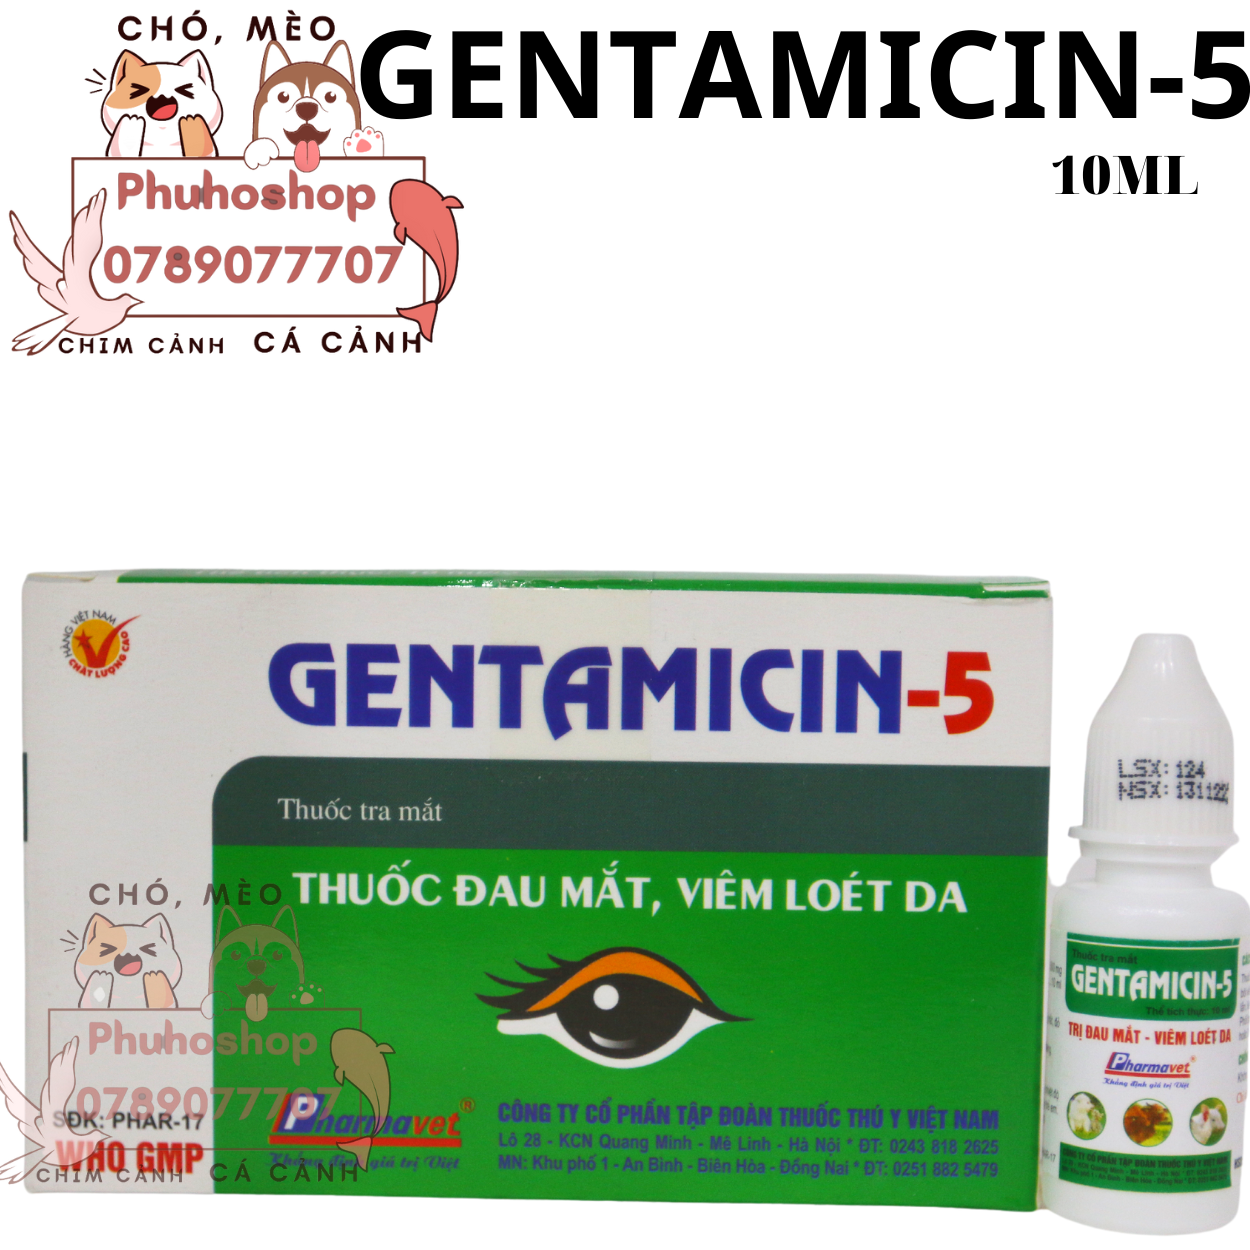 FREESHIP MAX Gentamicin 5 10ml phòng đau mắt, viêm kết mạc, chảy nước